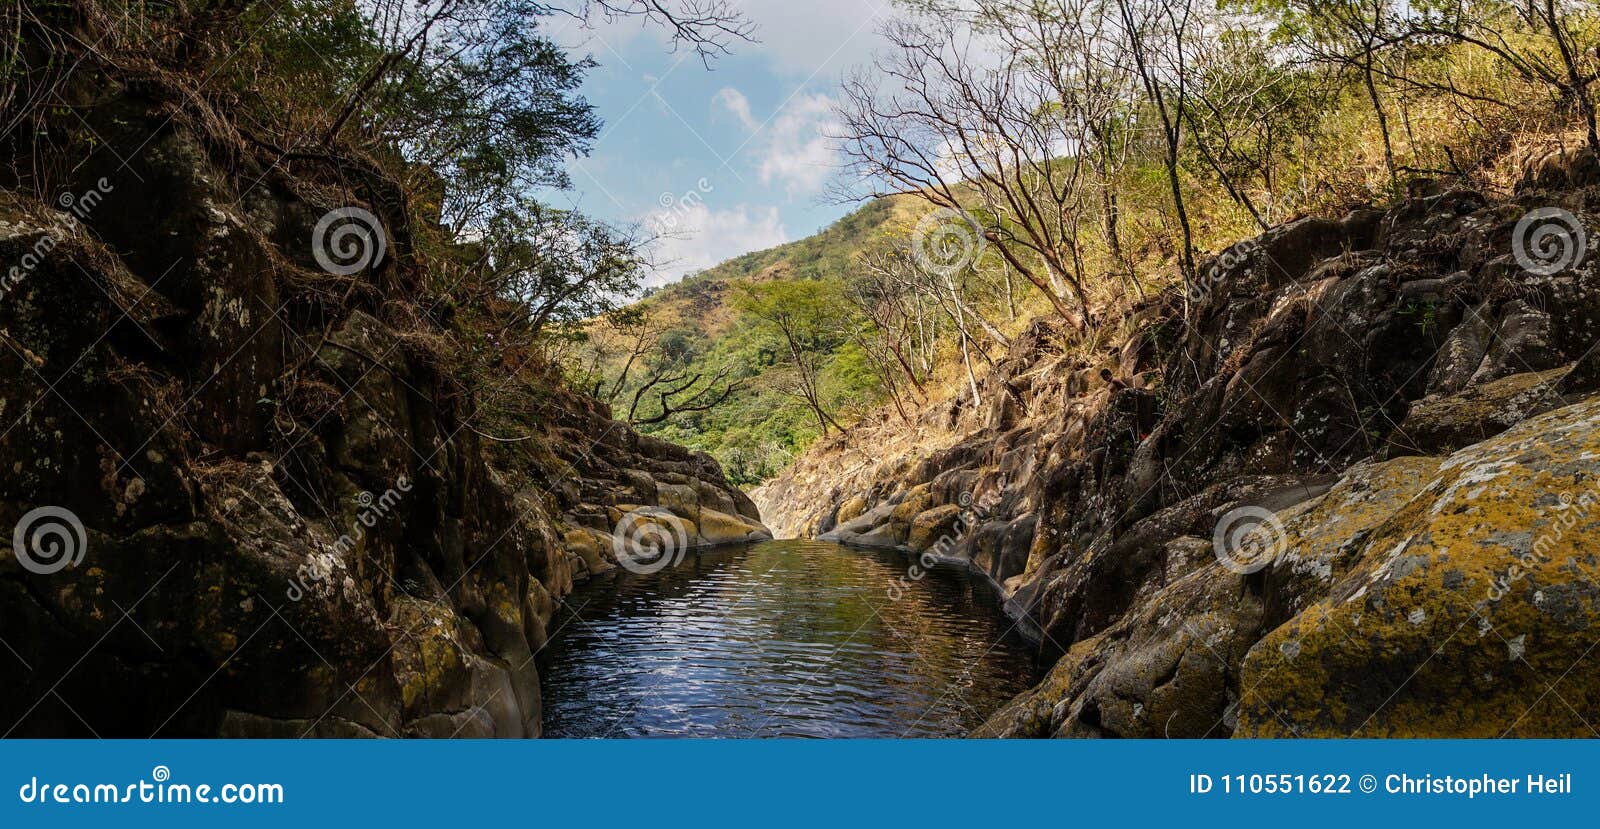 water pond in el imposible national park, honduras.